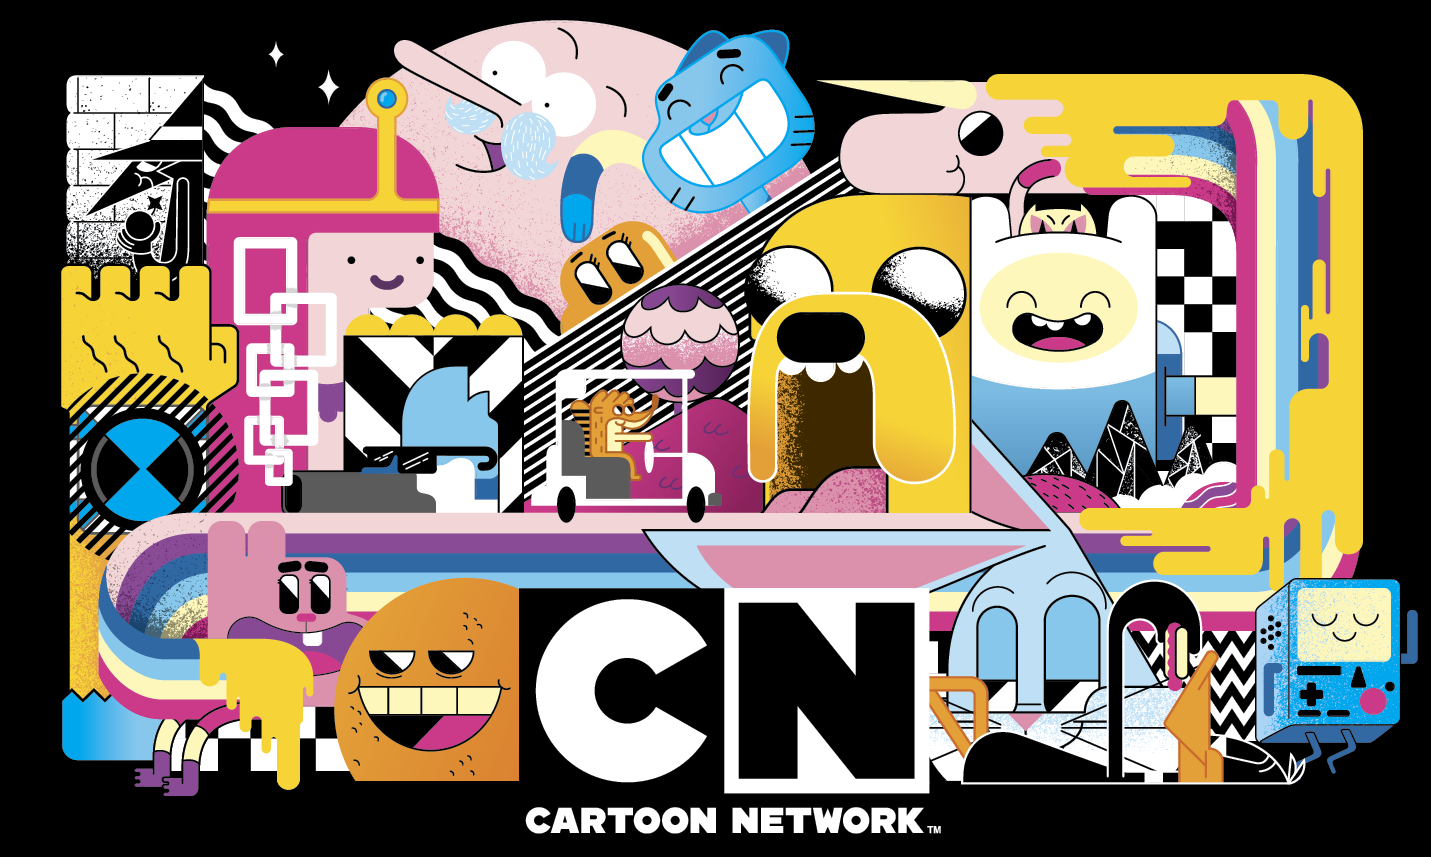 Cartoon Network Brasil: Drama Total:Só Estrelas estreia hoje no